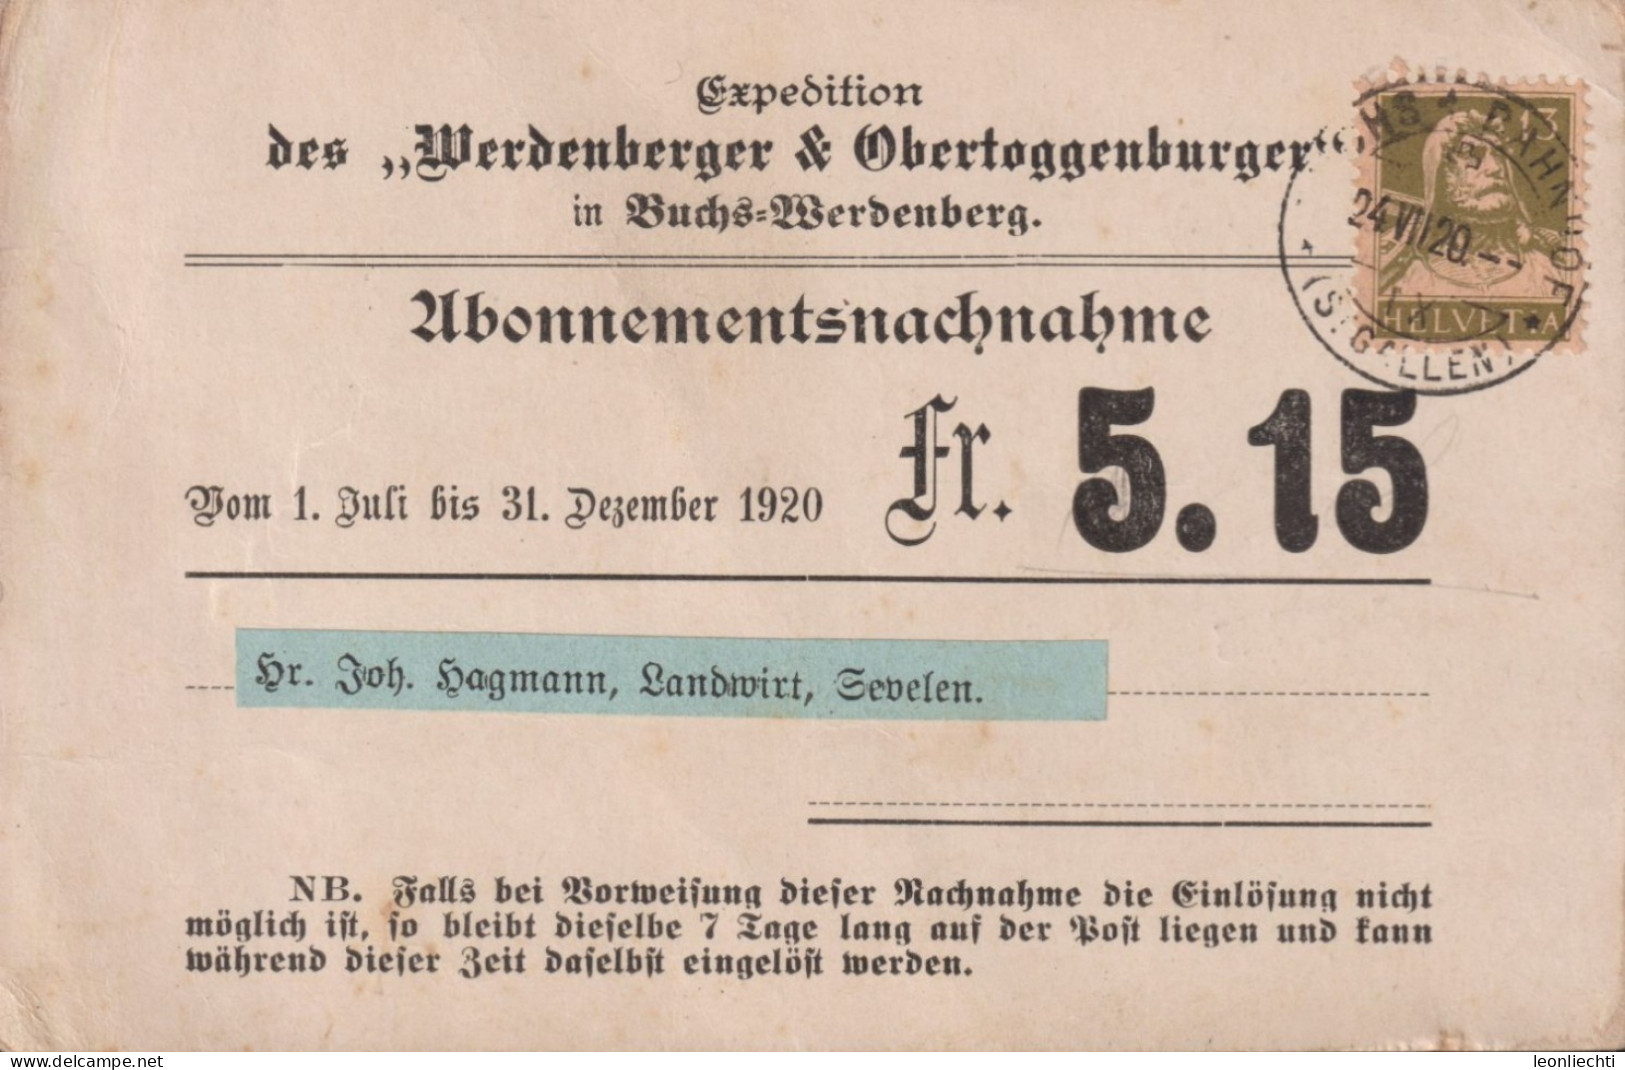 1920 Abonnementsnachnahme Zum: 139, Werdenberger & Obertoggenburger - Covers & Documents